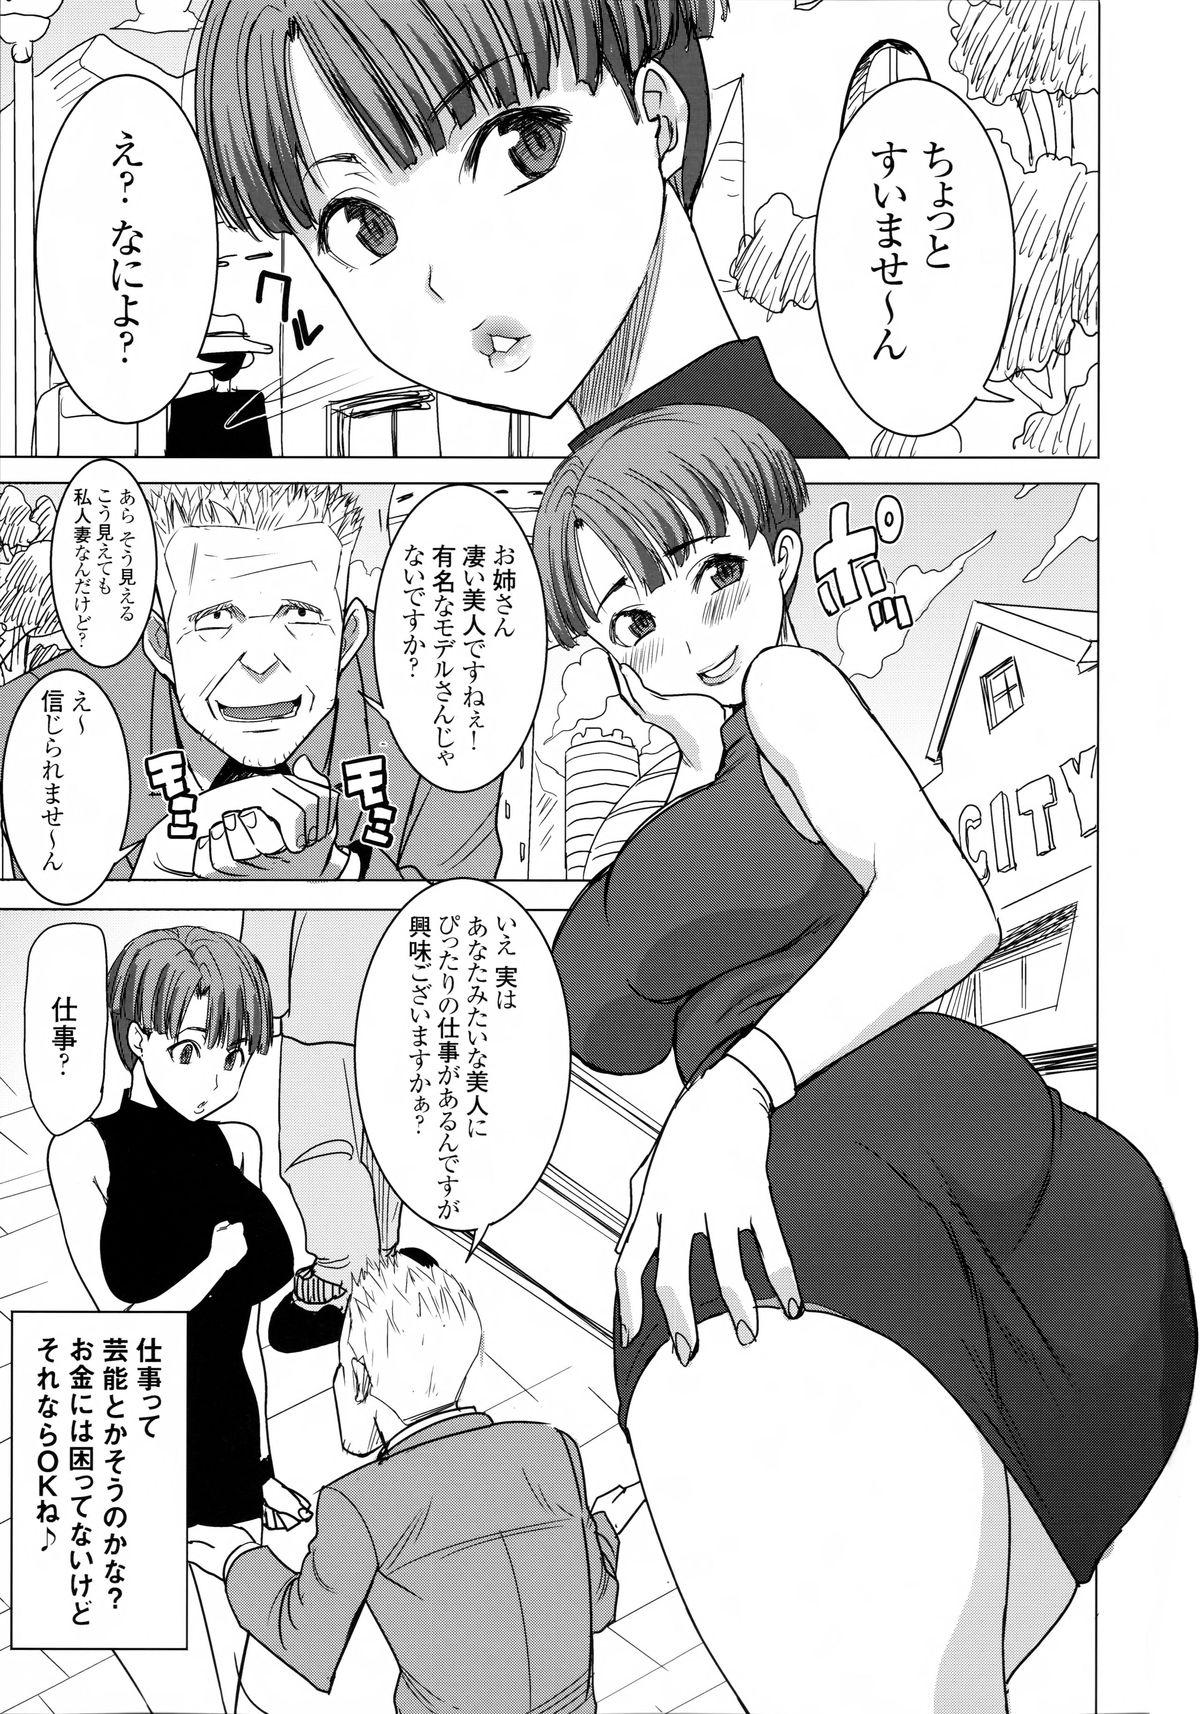 Fake Tits DELIVERY NIKU BENKI - Dragon ball z Trap - Page 3